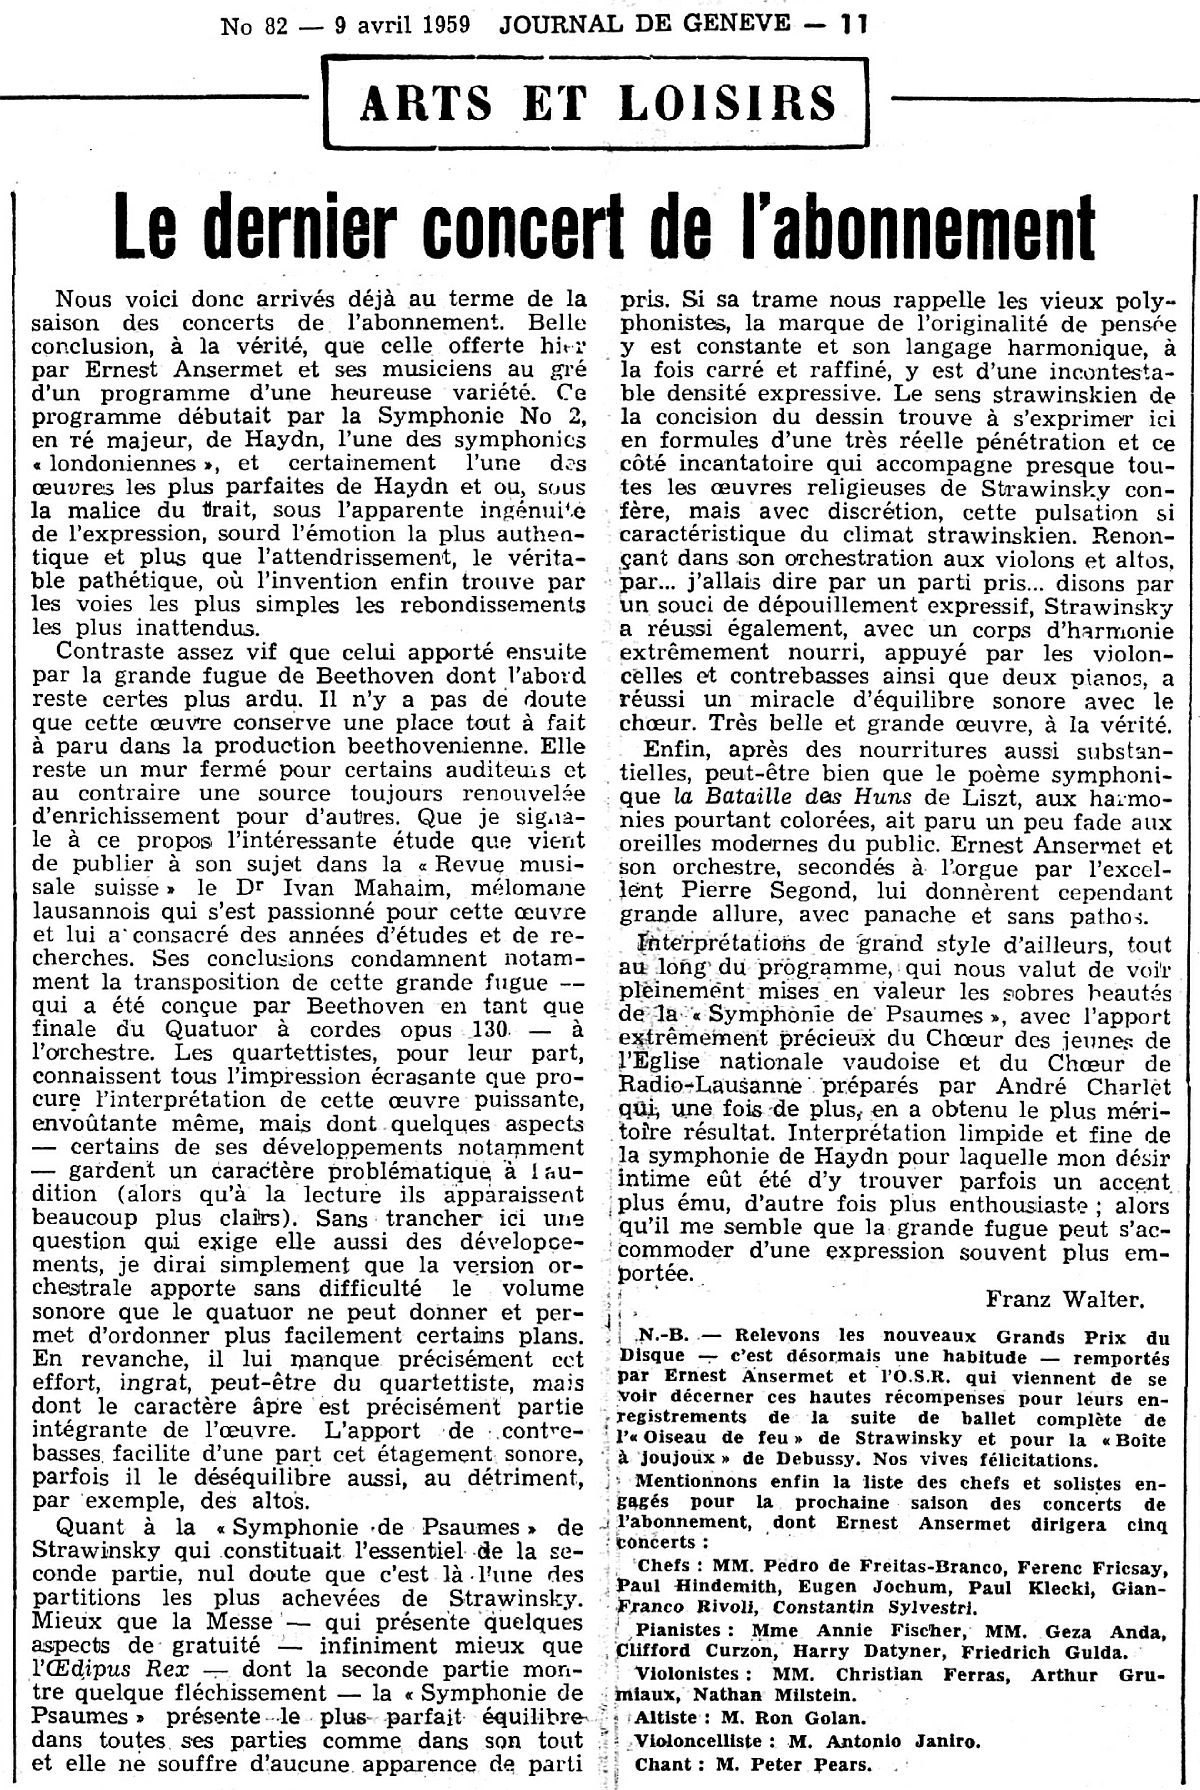 Journal de Genève du 9 avril 1959, concert du 8 avril 1959, compte-rendu de Franz WALTER, cliquer pour une vue agrandie